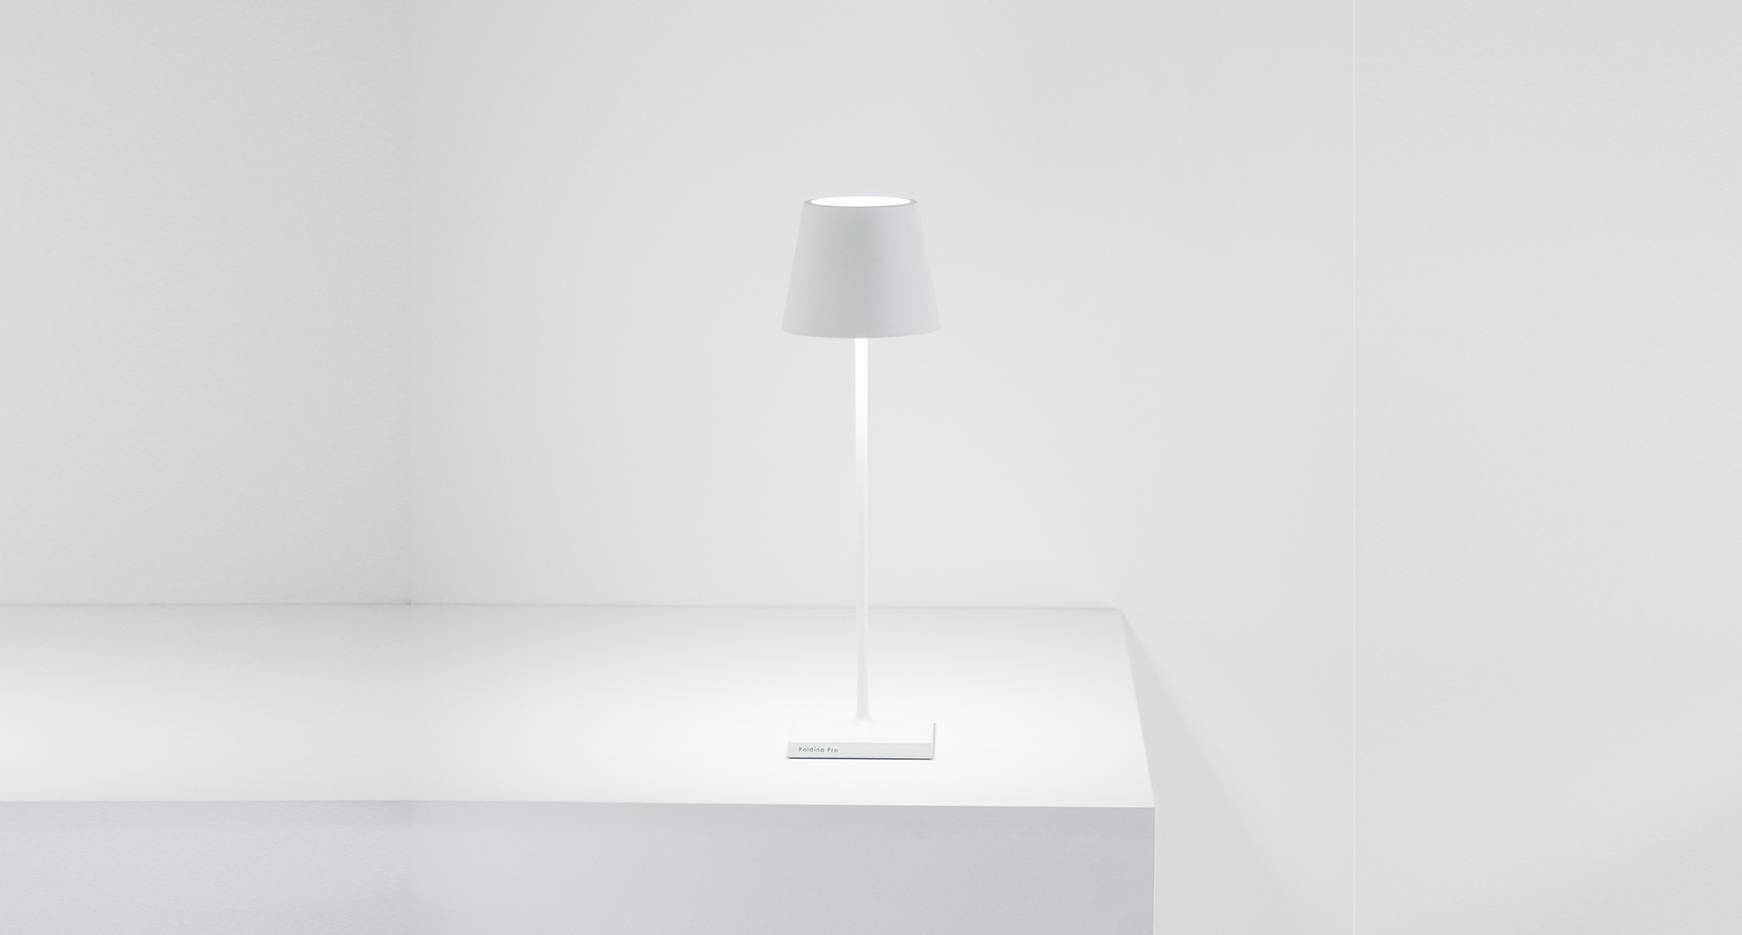 Zafferano Poldina Table Lamp Pro